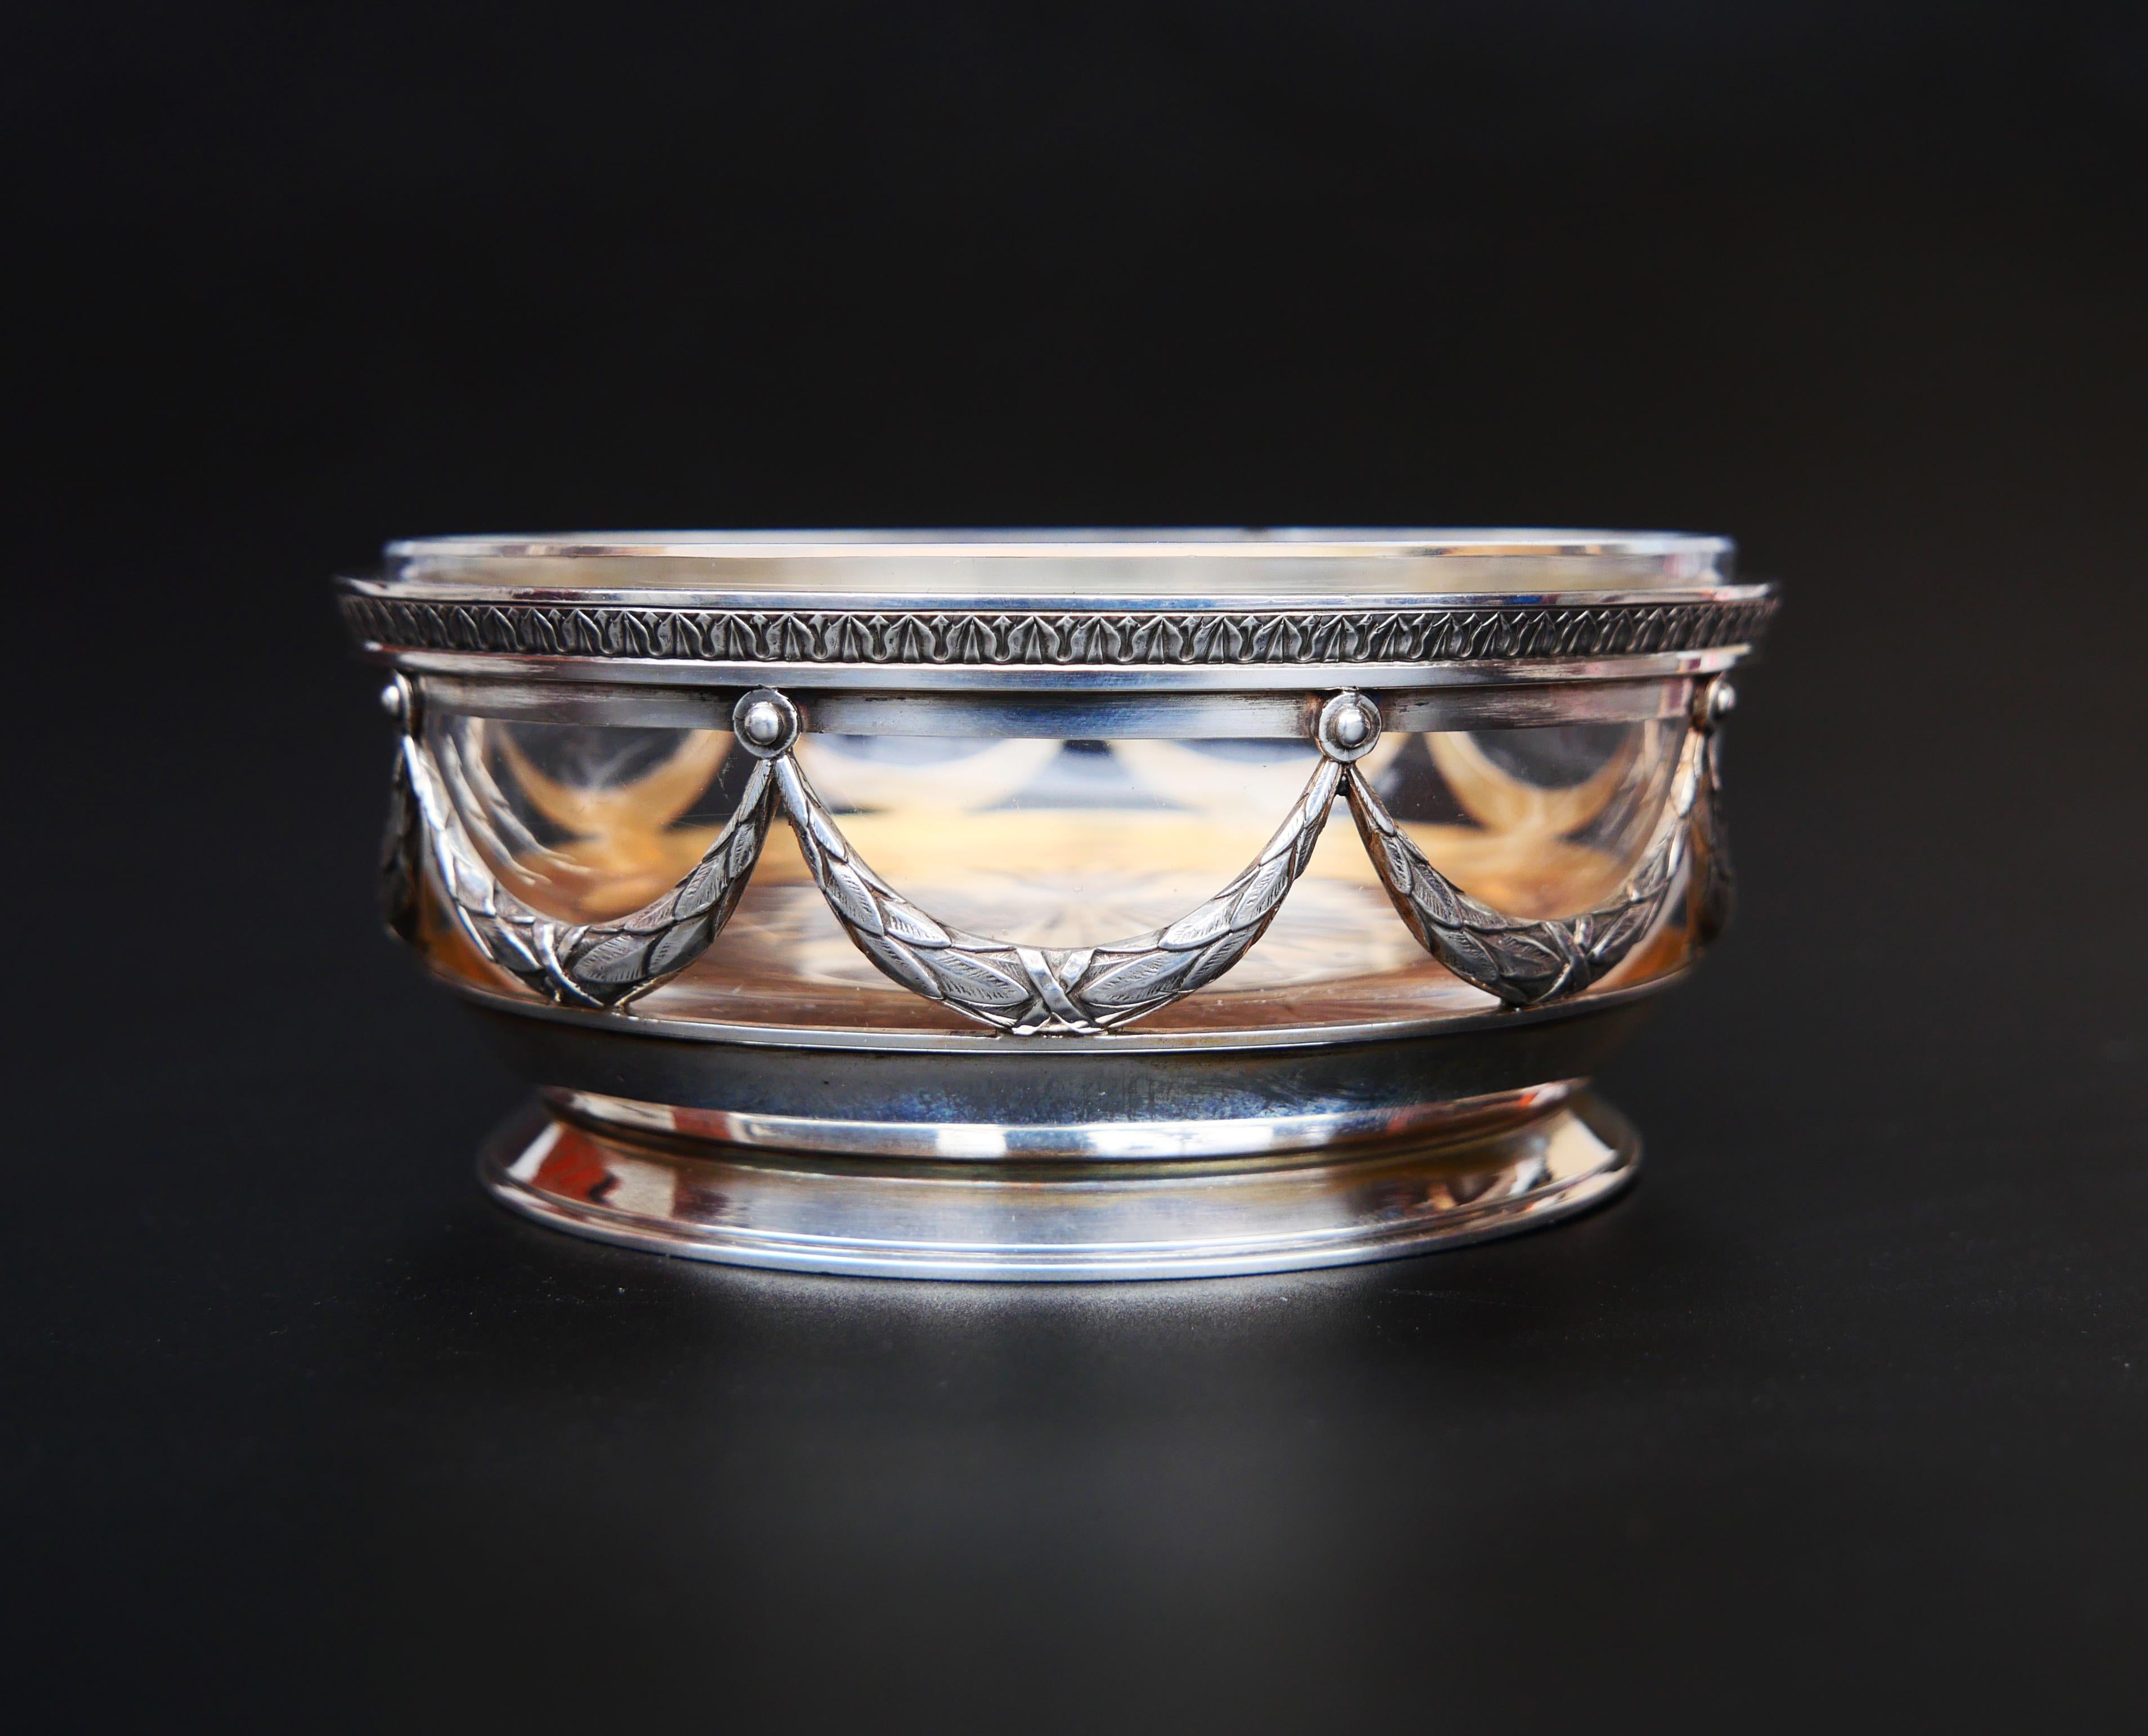 Antike Faberge-Schale aus massivem 84-Silberschliff-Kristallglas im russischen Empire-Stil, 1908-1916 (Rosenschliff)